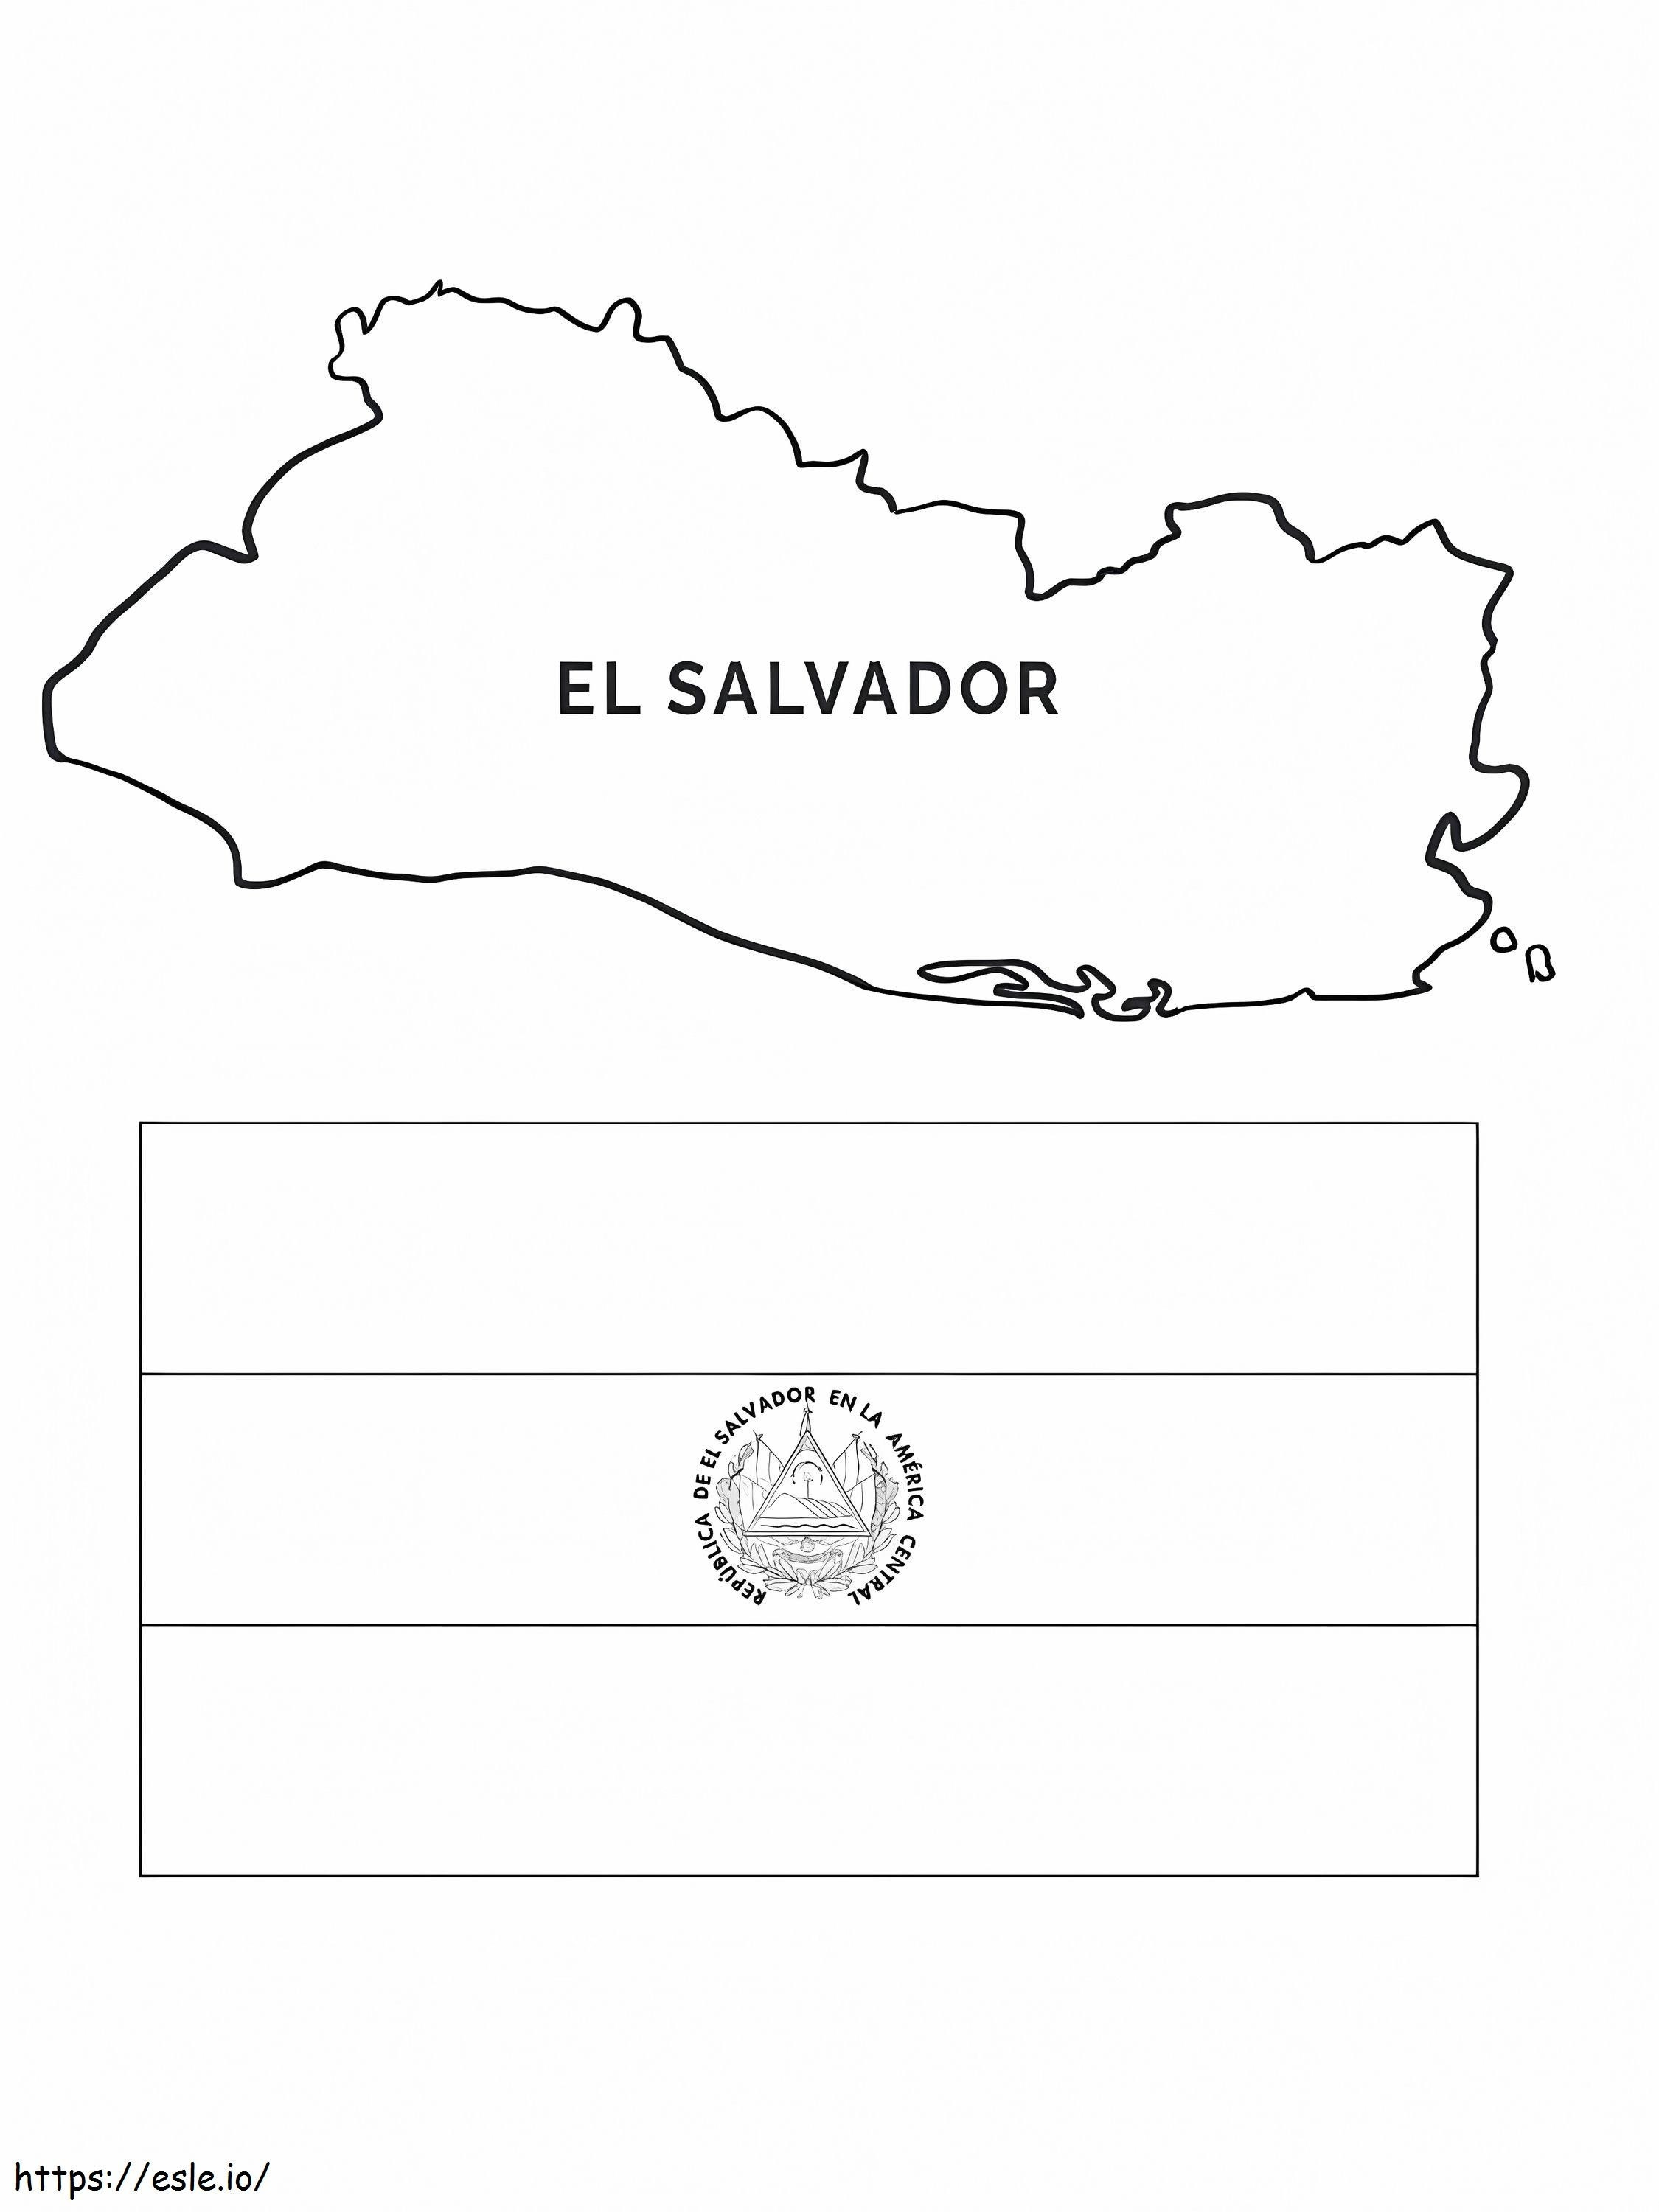 Mapa y bandera de El Salvador para colorear